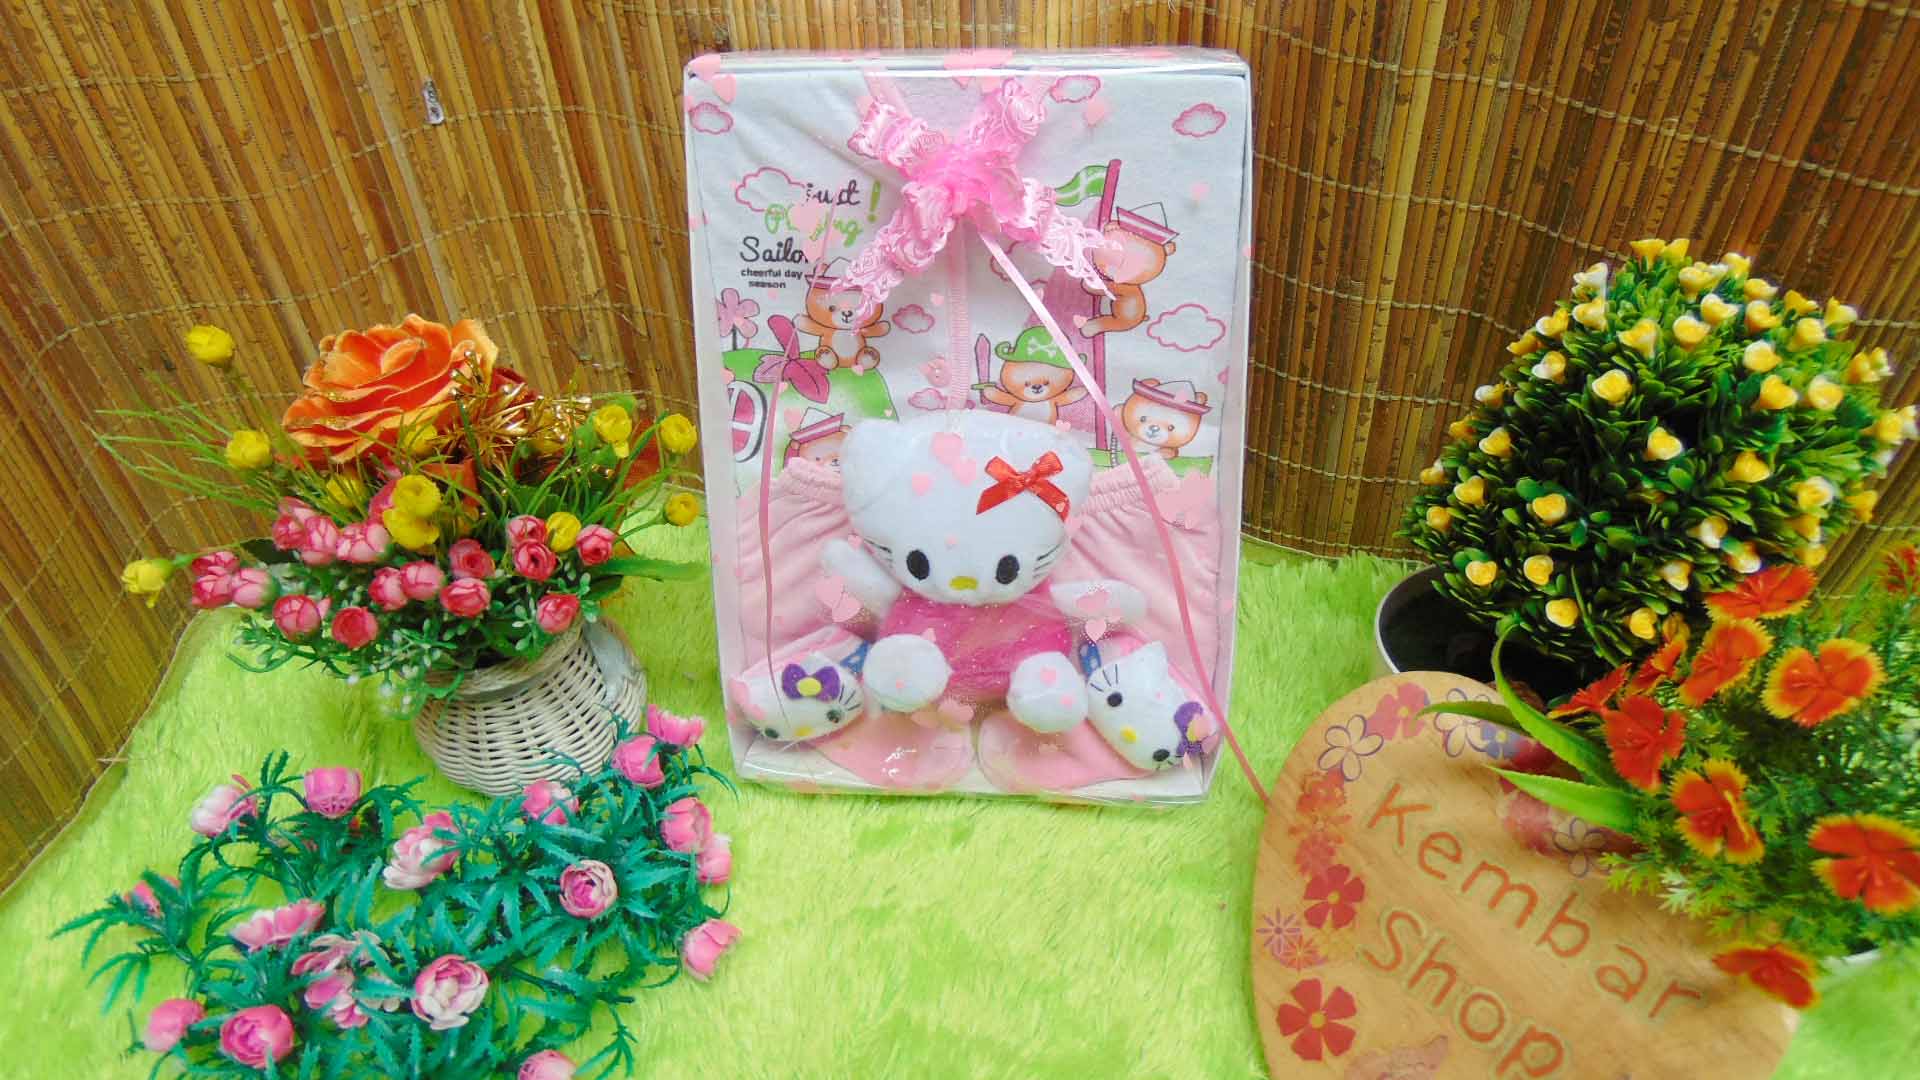 FREE KARTU UCAPAN paket kado bayi baru lahir newborn gift box karakter doraemon keroppi hello kitty (3)